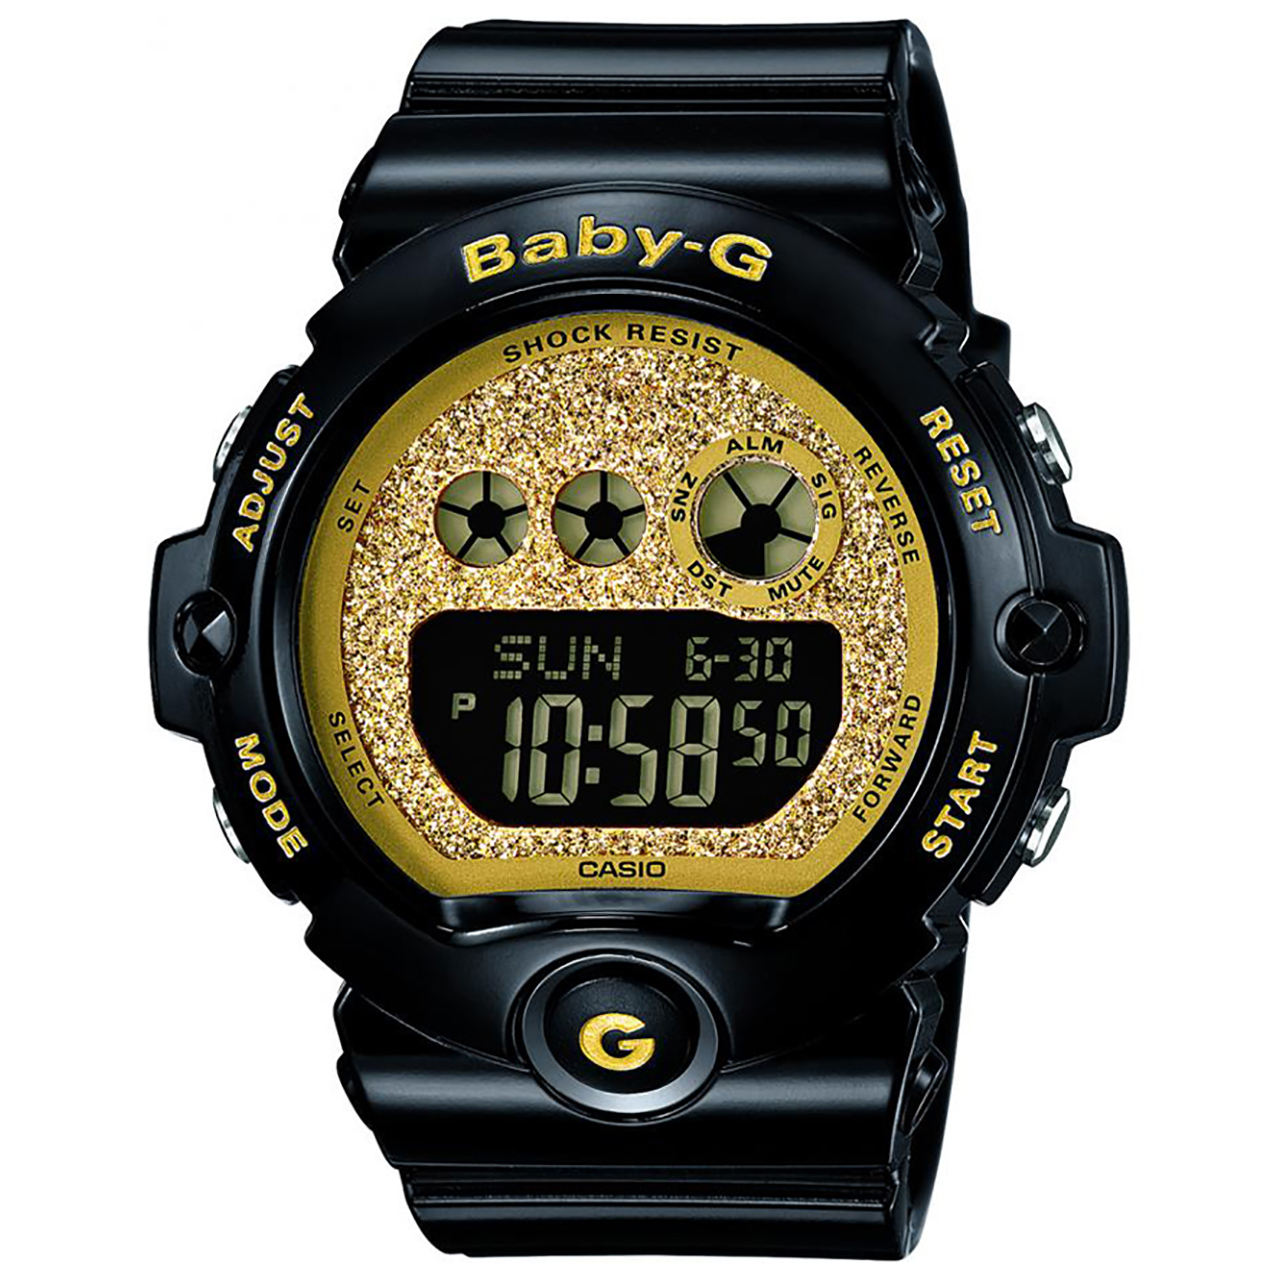 Khám phá đồng hồ Casio BG-6900SG-1DR